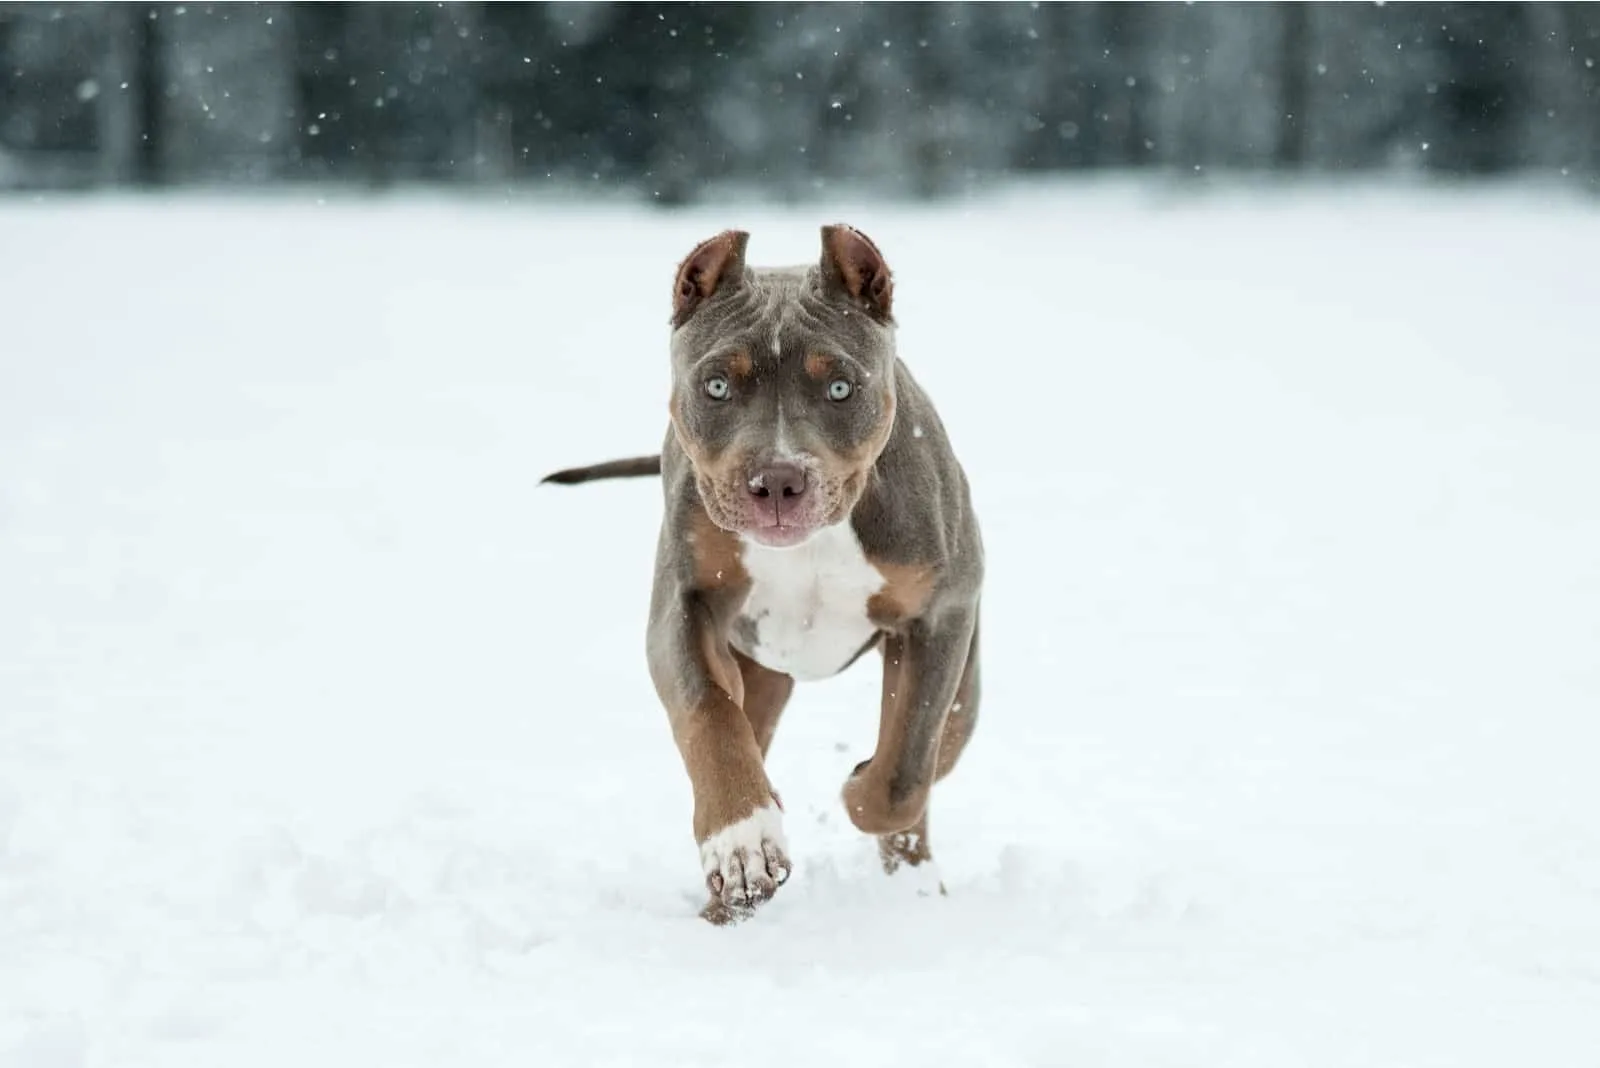 A Tri-Colored Pitbull puppy runs across the snow